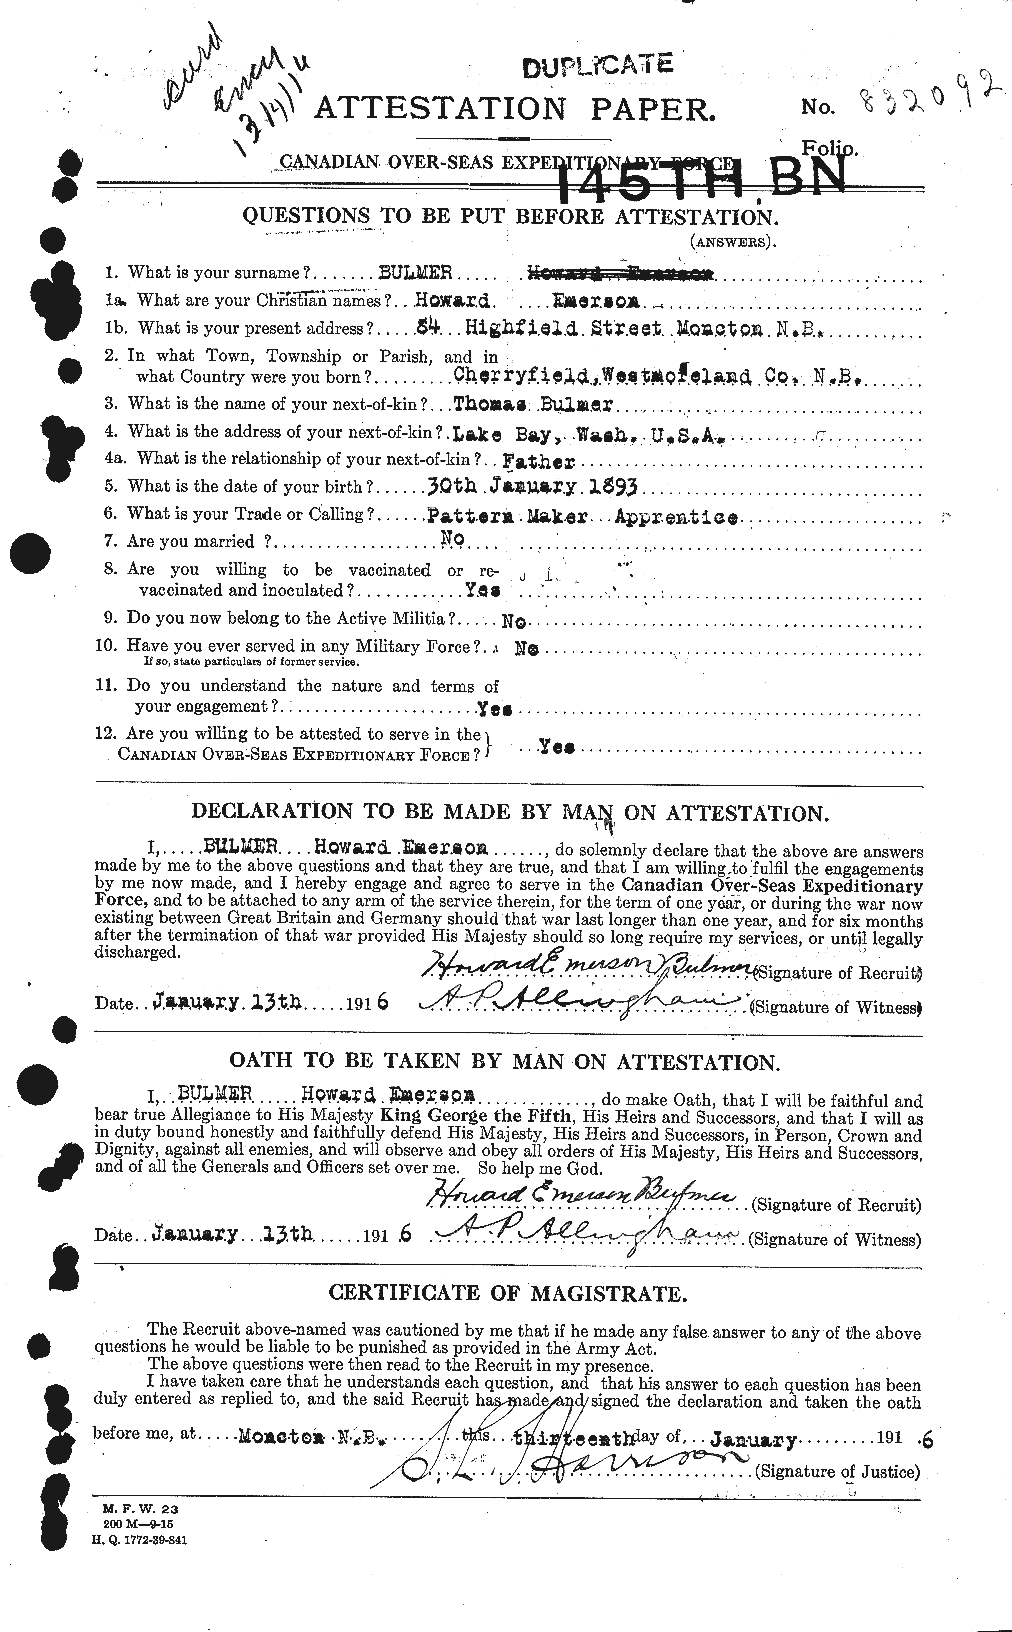 Dossiers du Personnel de la Première Guerre mondiale - CEC 269821a